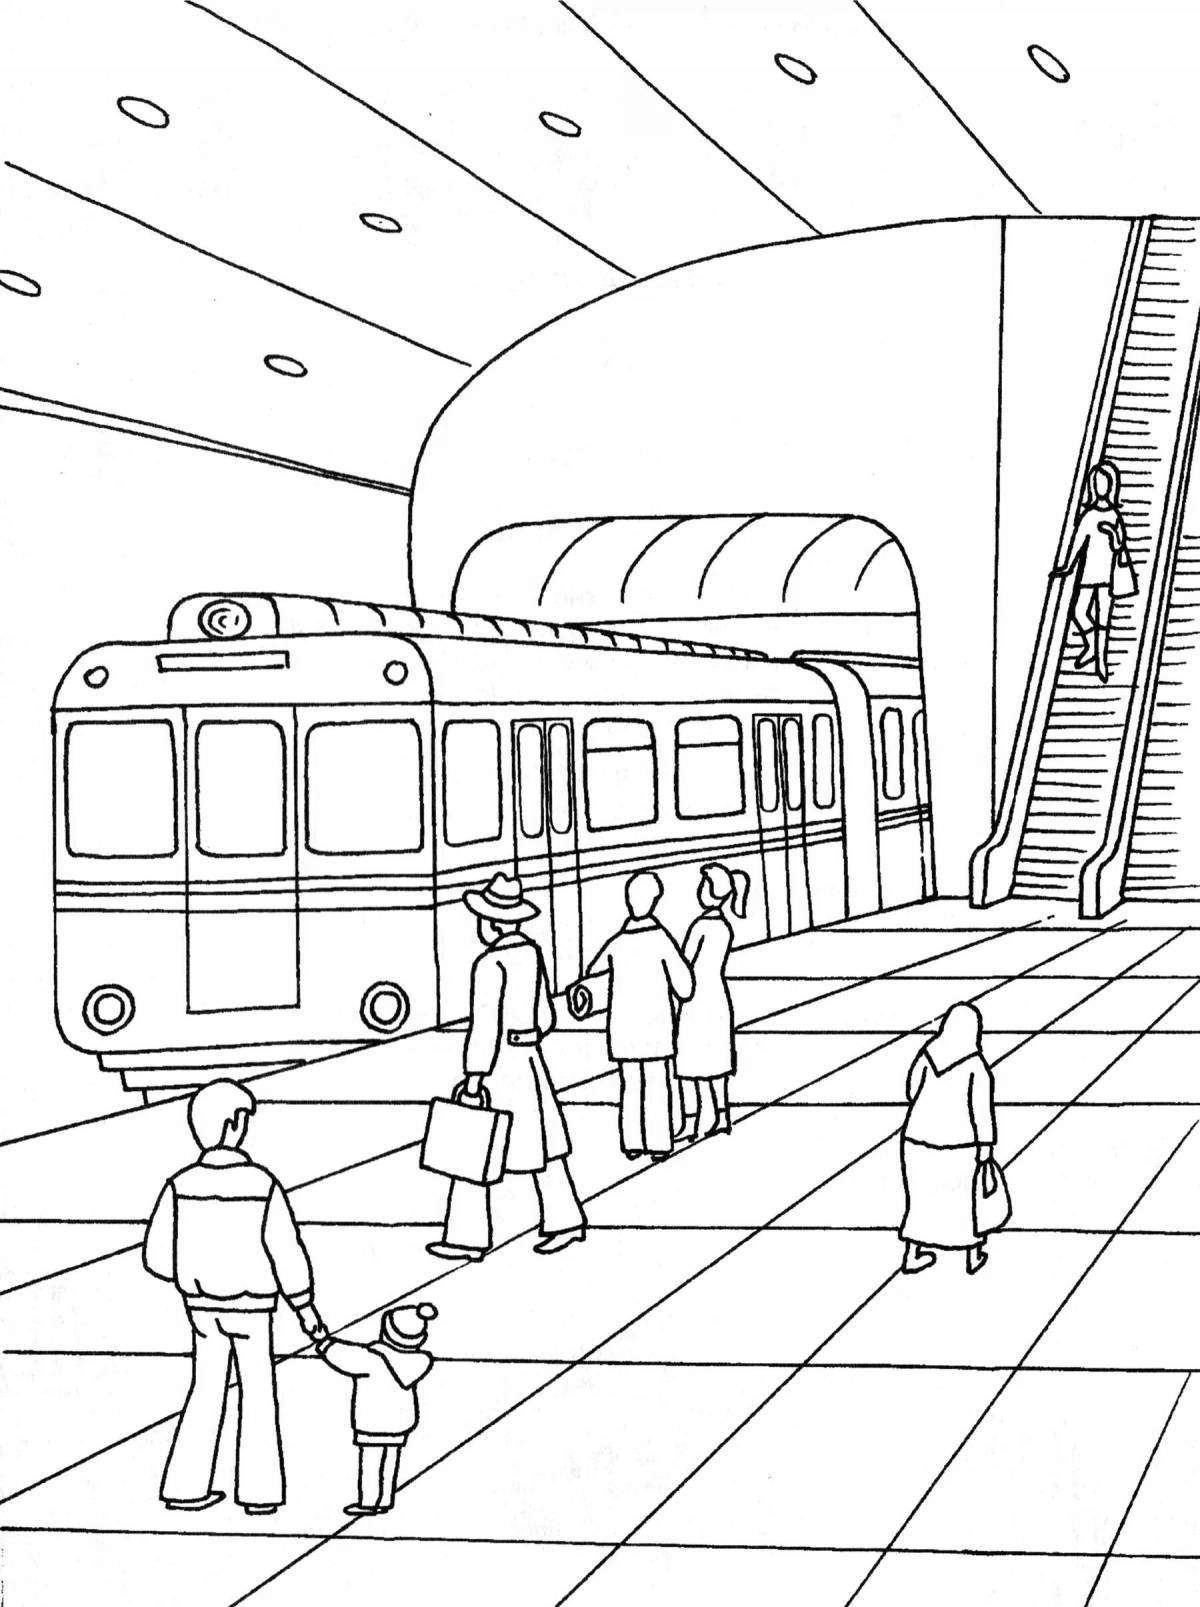 Coloring book for kids colorful-trek metro